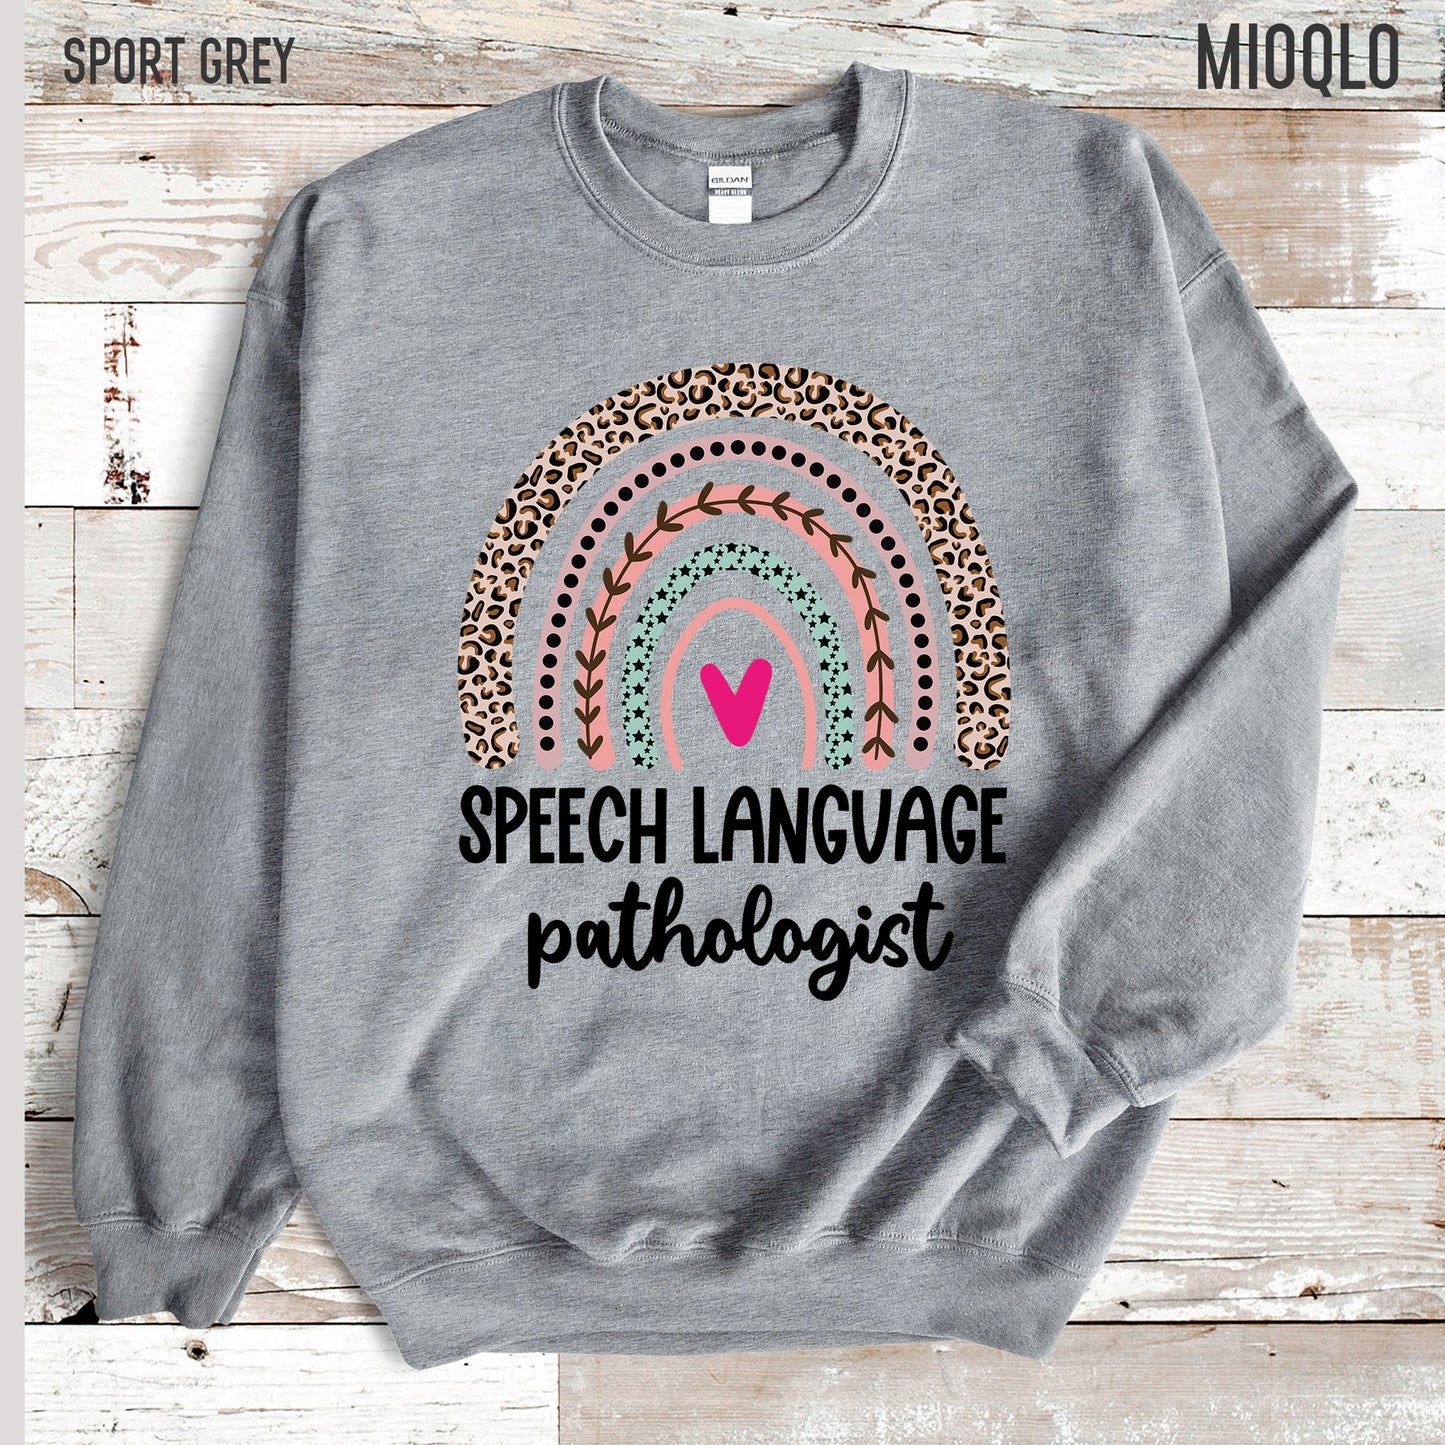 Speech Language Pathologist Sweatshirt, Speech Therapy Sweater, Speech Language Pathologist Gift, Speech Pathology SLPA Therapist, SLP Shirt